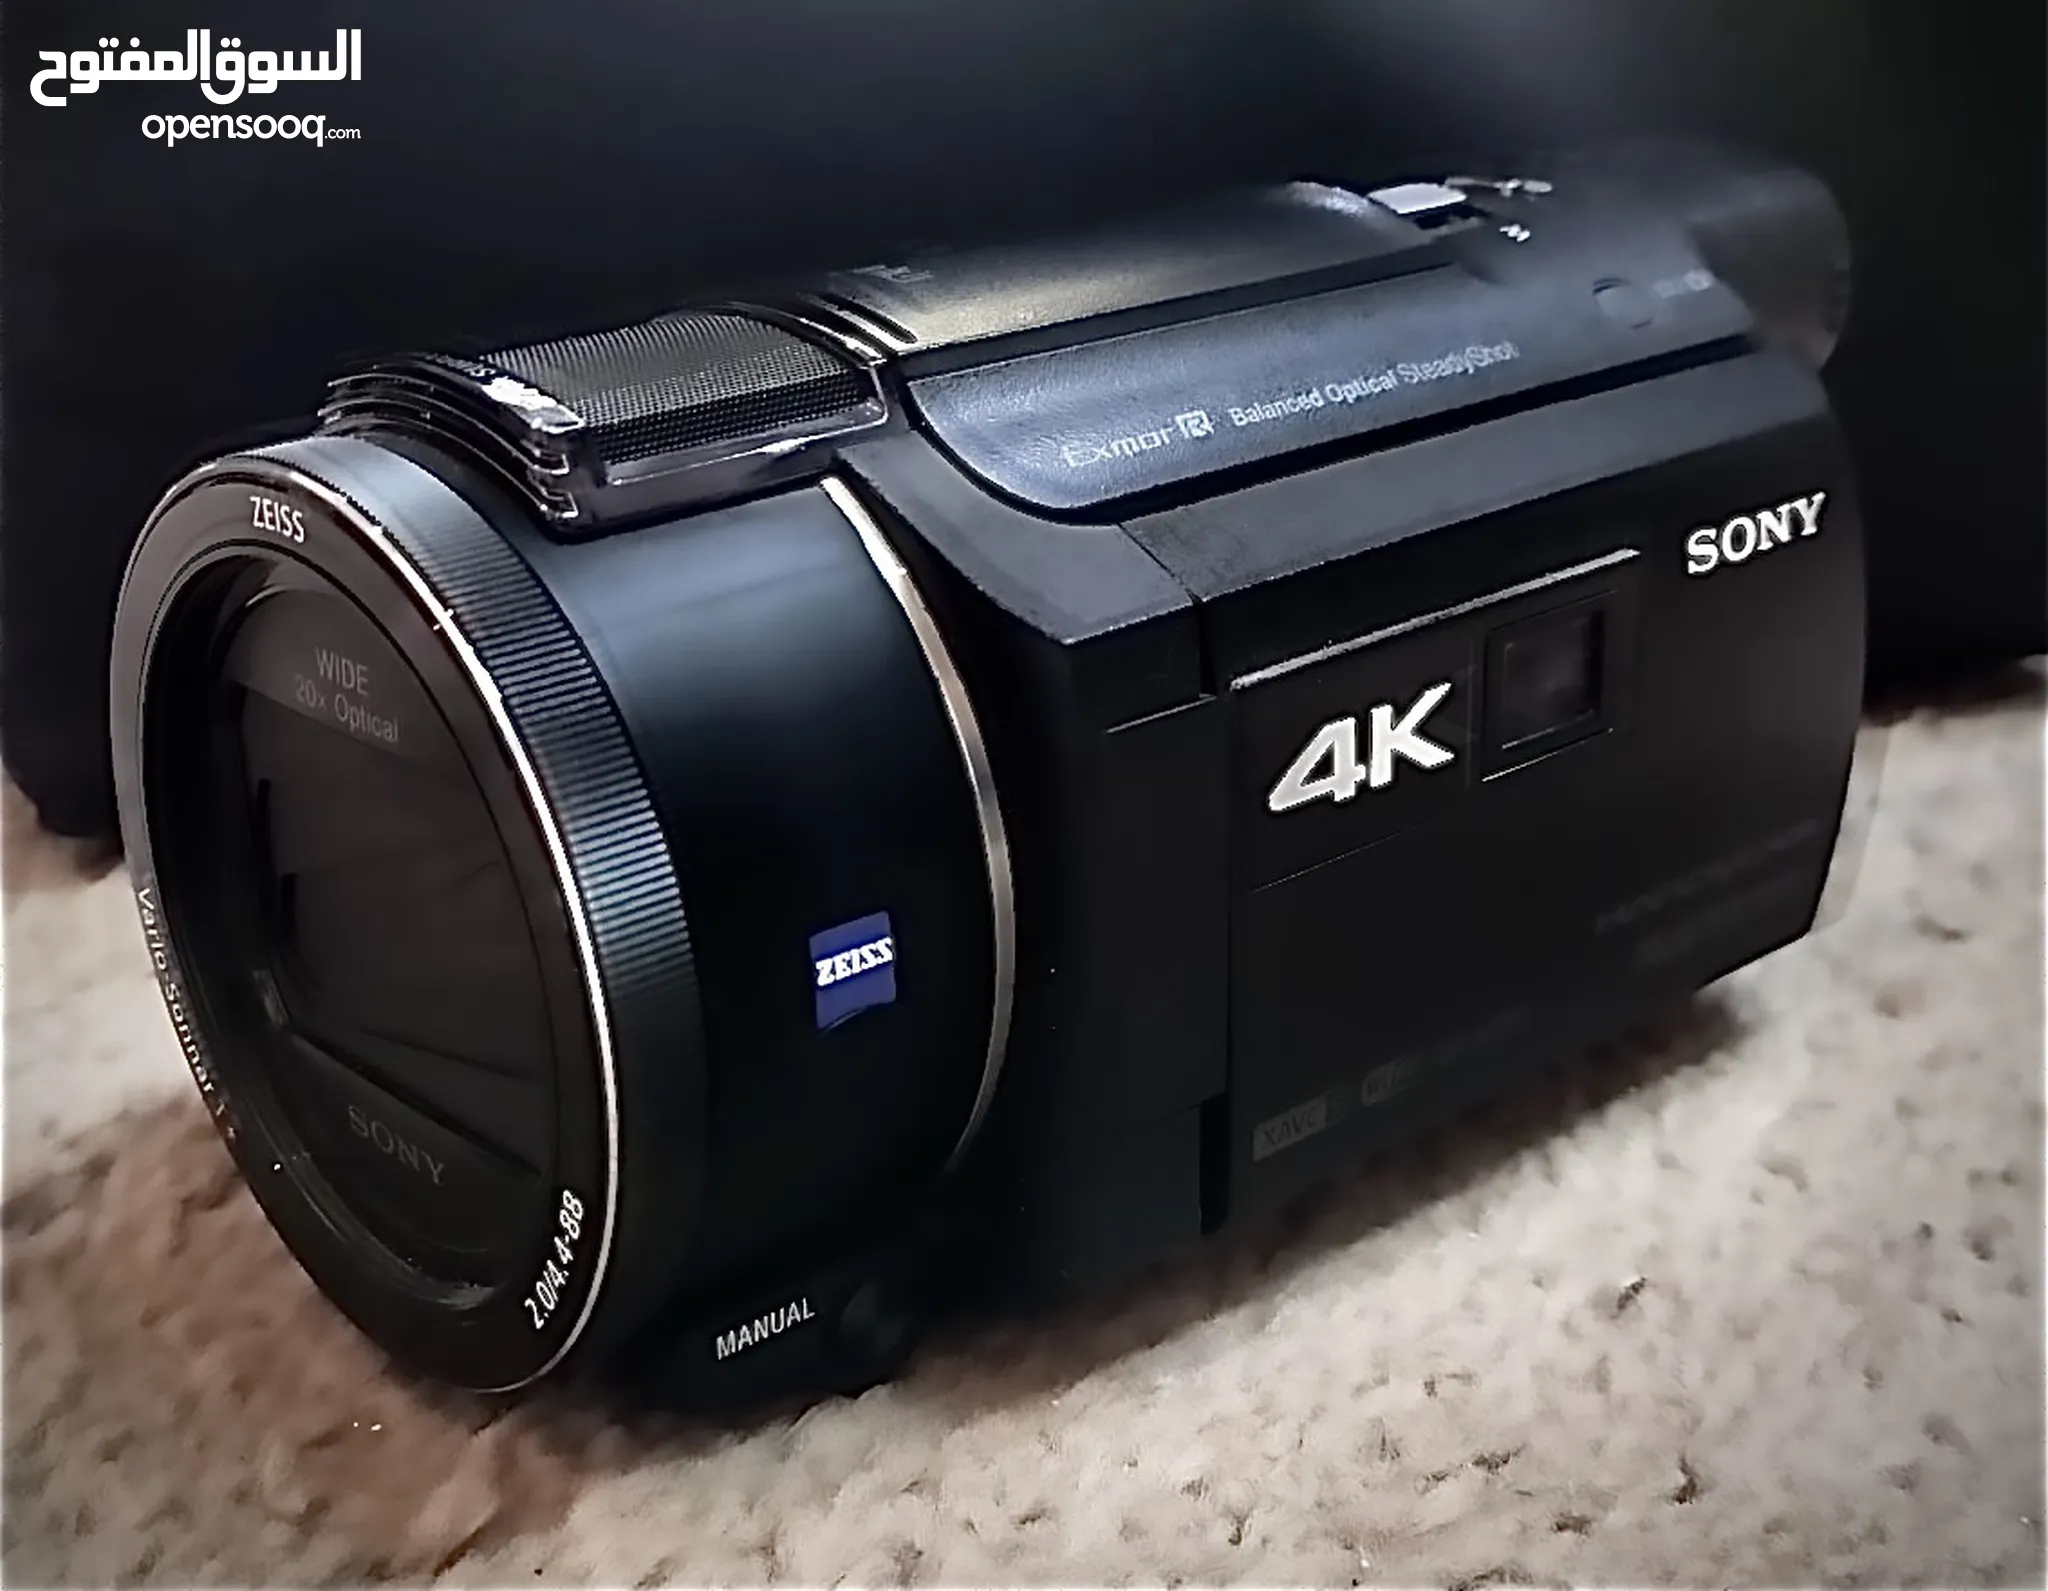 كاميرات سوني للبيع : كاميرا سوني a7iii : ZV1 : a6400 : a7c : قديمة وديجيتال  : أفضل الأسعار : السعودية | السوق المفتوح